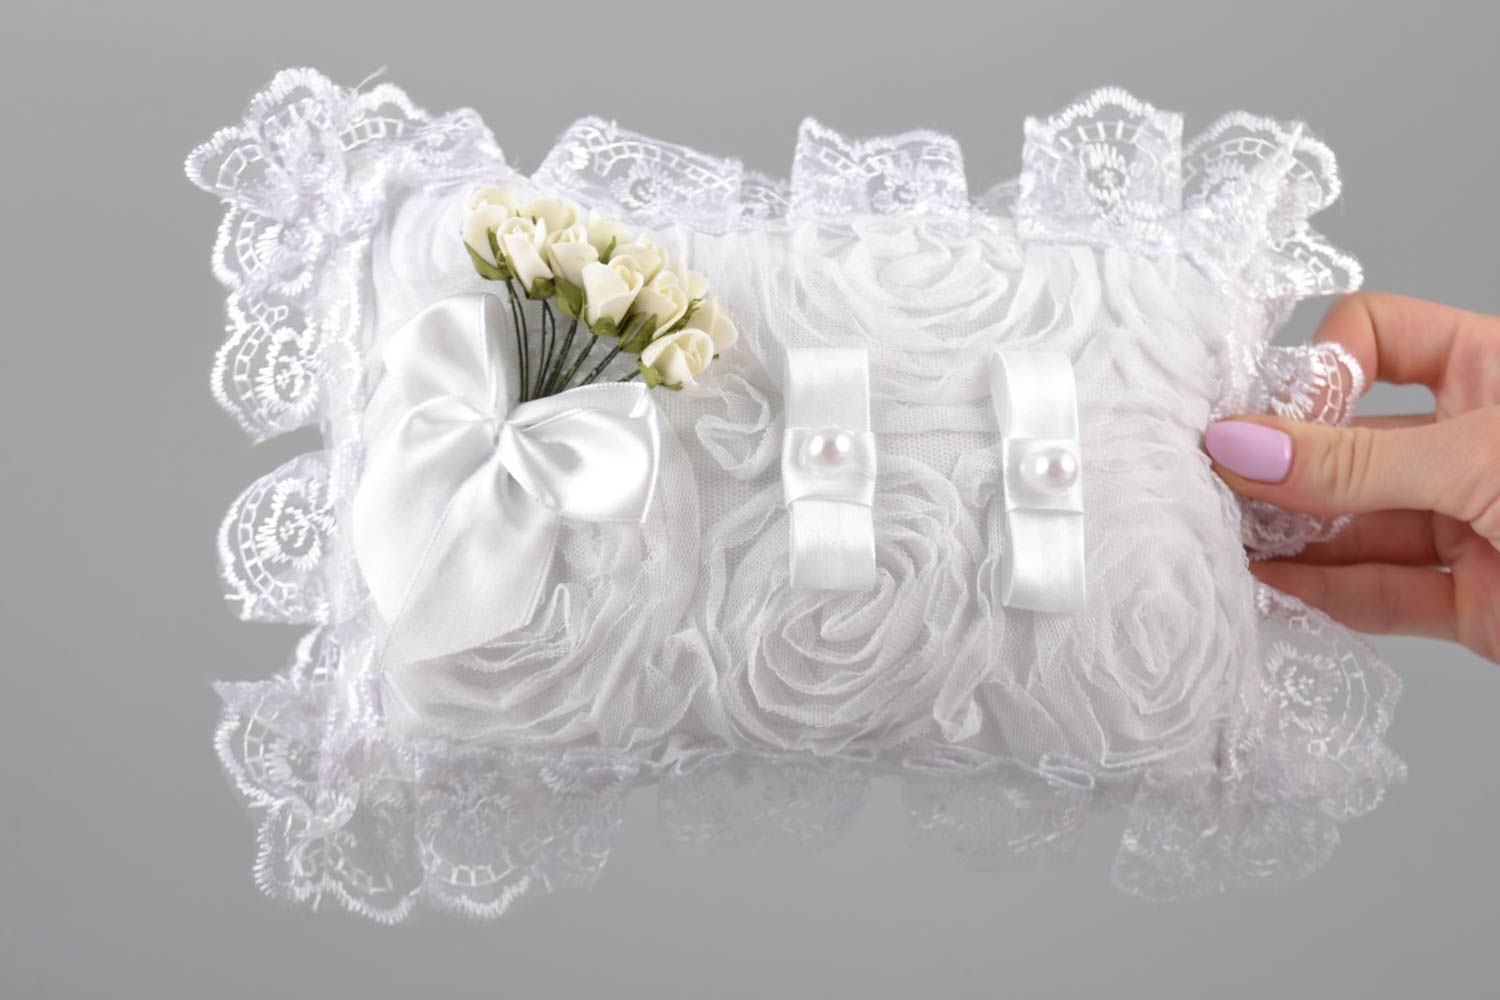 Свадебная подушечка для колец прямоугольная белая с цветами красивая хэнд мейд фото 5